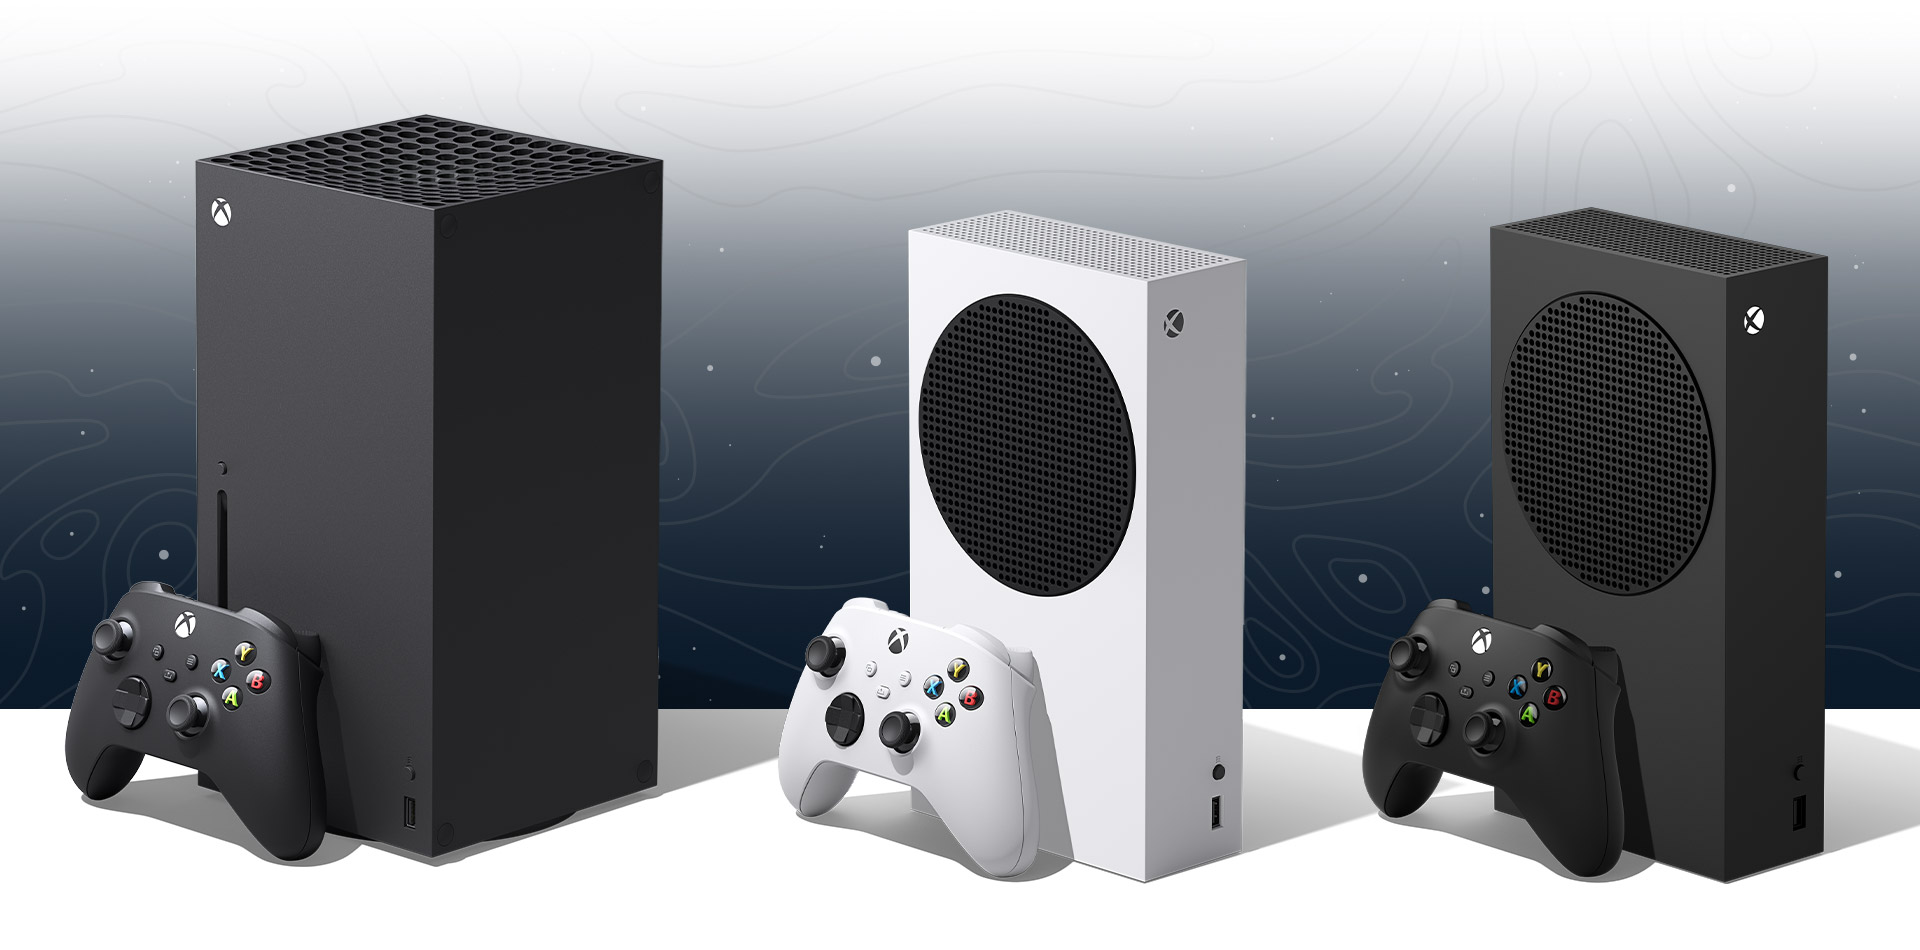 Captura de ecrã da Xbox Series X, Xbox Series S e Xbox Series S - 1 TB com comandos a preto e branco correspondentes.